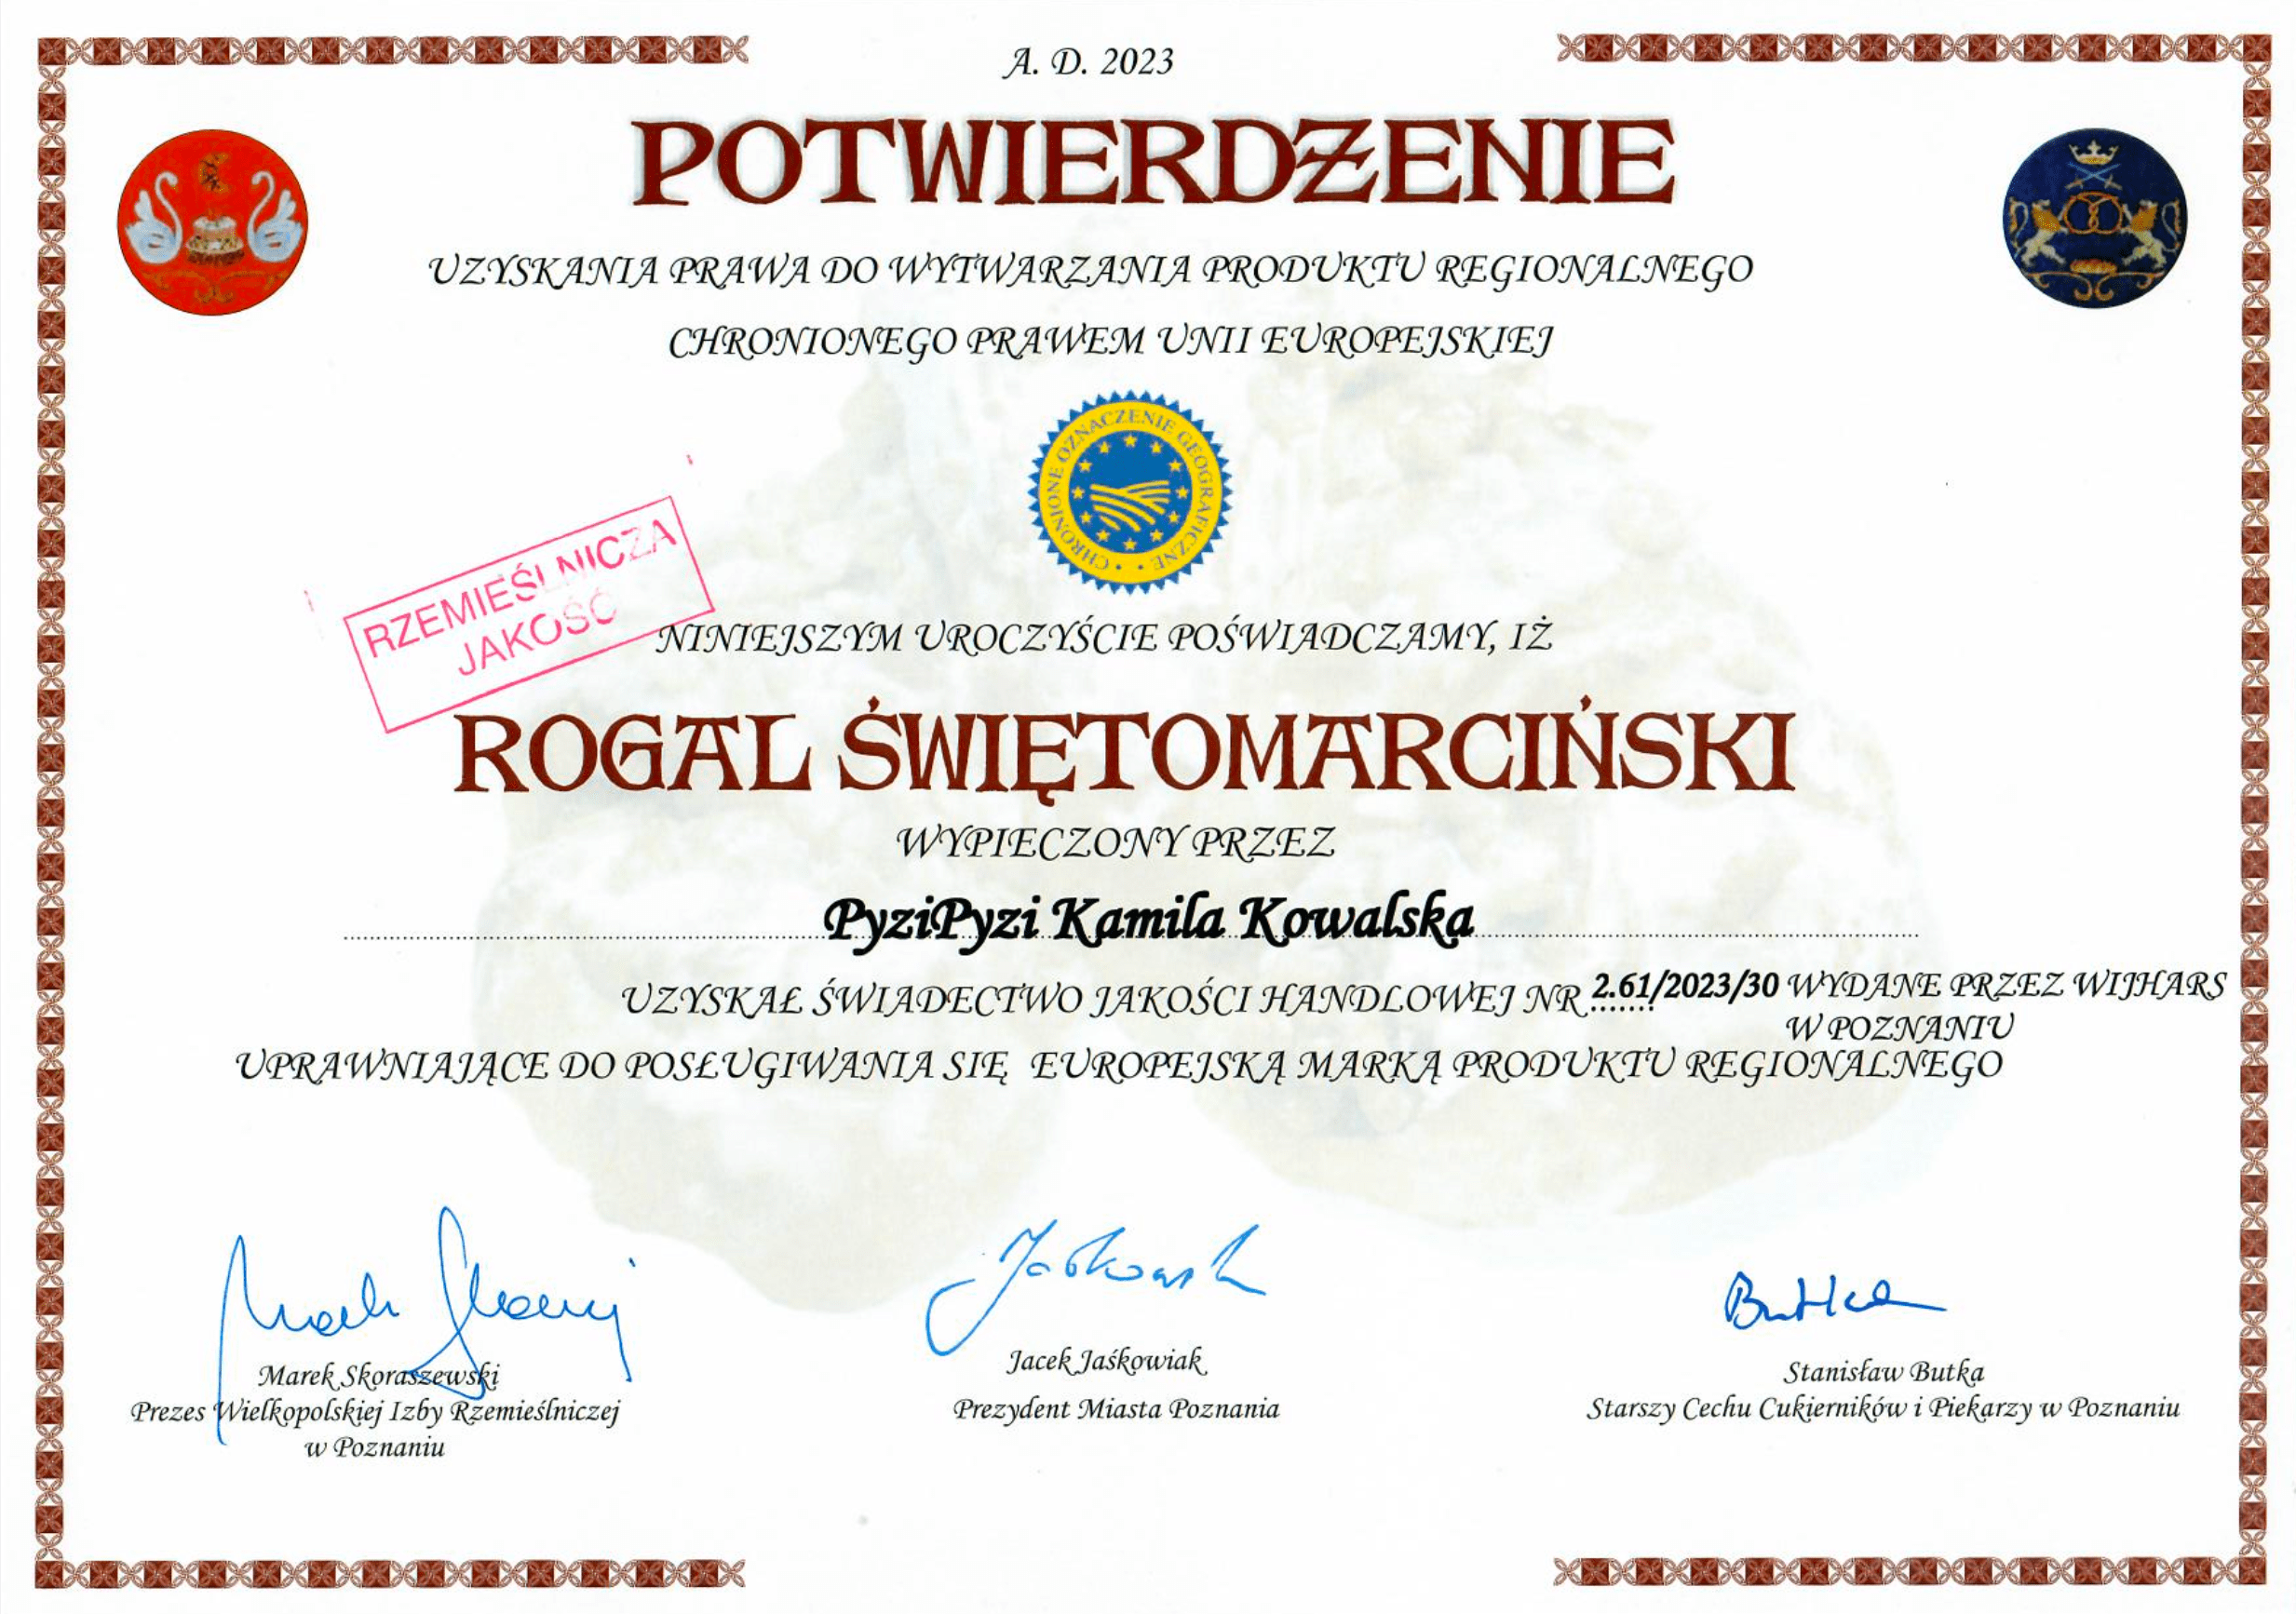 Rogal Świętomarciński. Certyfikat PyziPyzi - domowe wyroby cukiernicze. Pierwsza i jedyna cukiernia w Kaliszu z certyfikatem!